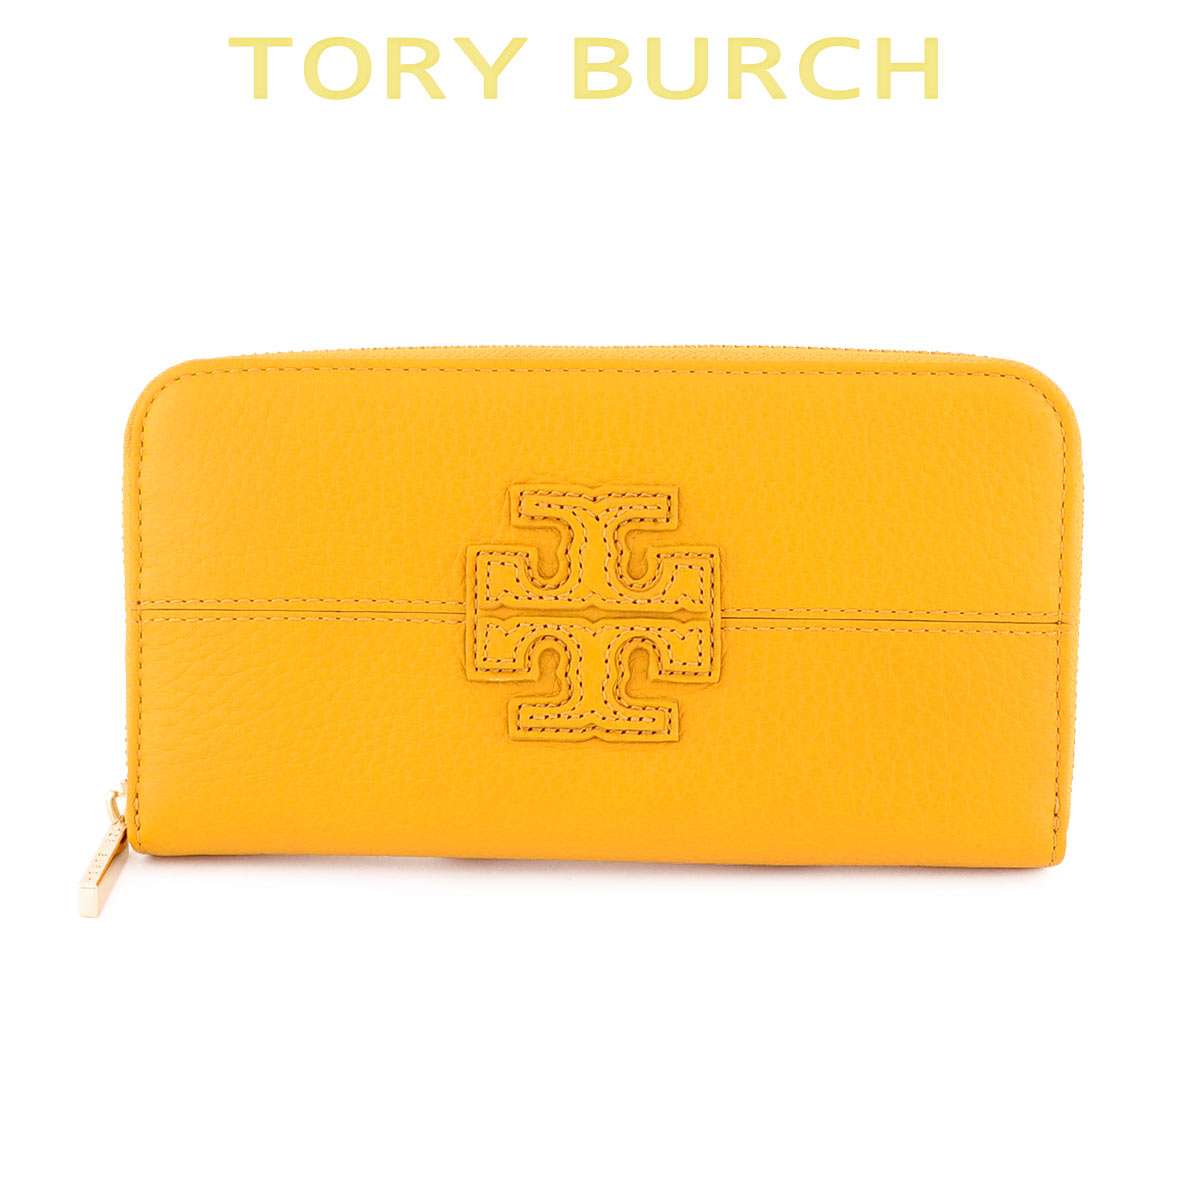 トリーバーチ 長財布 レディース トリーバーチ 財布 レディース 長財布 ブランド 本革 大容量 カード 薄い Tory Burch